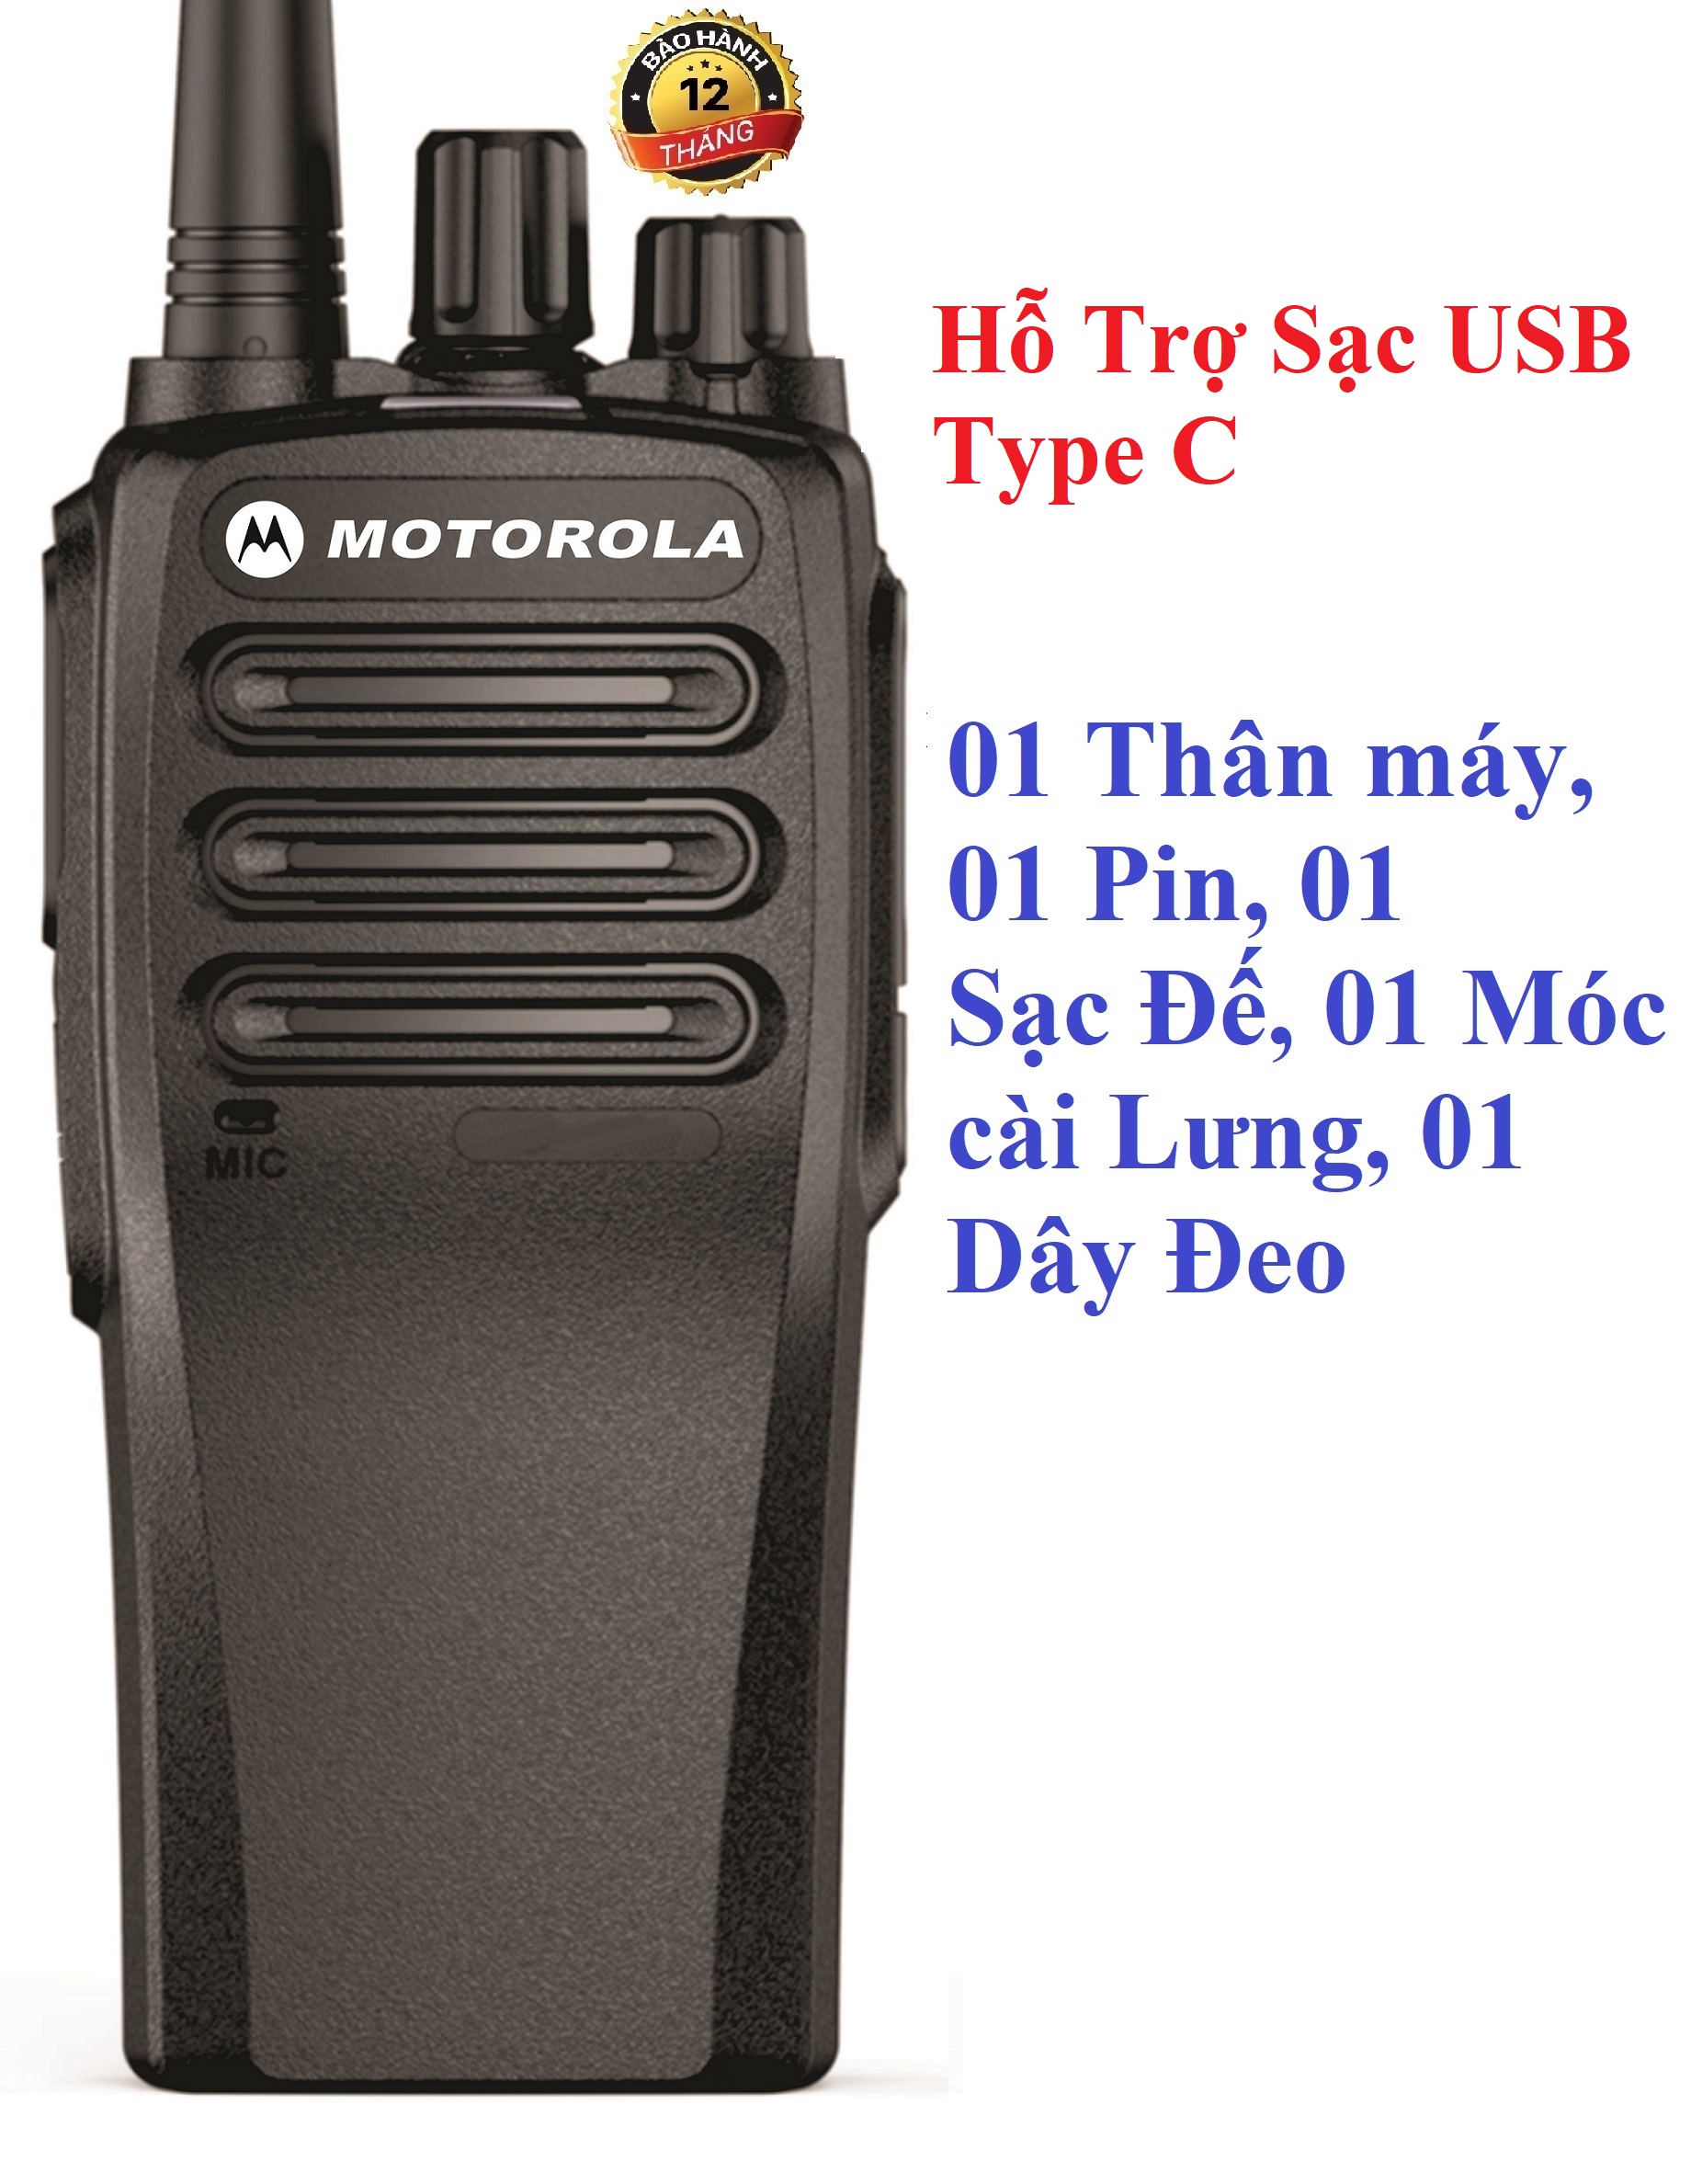 Bộ đàm công suất lớn Motorola VX3688 (8W thực, loa to, cự ly liên lạc xa, giá siêu rẻ, hỗ trợ sạc USB Type C)